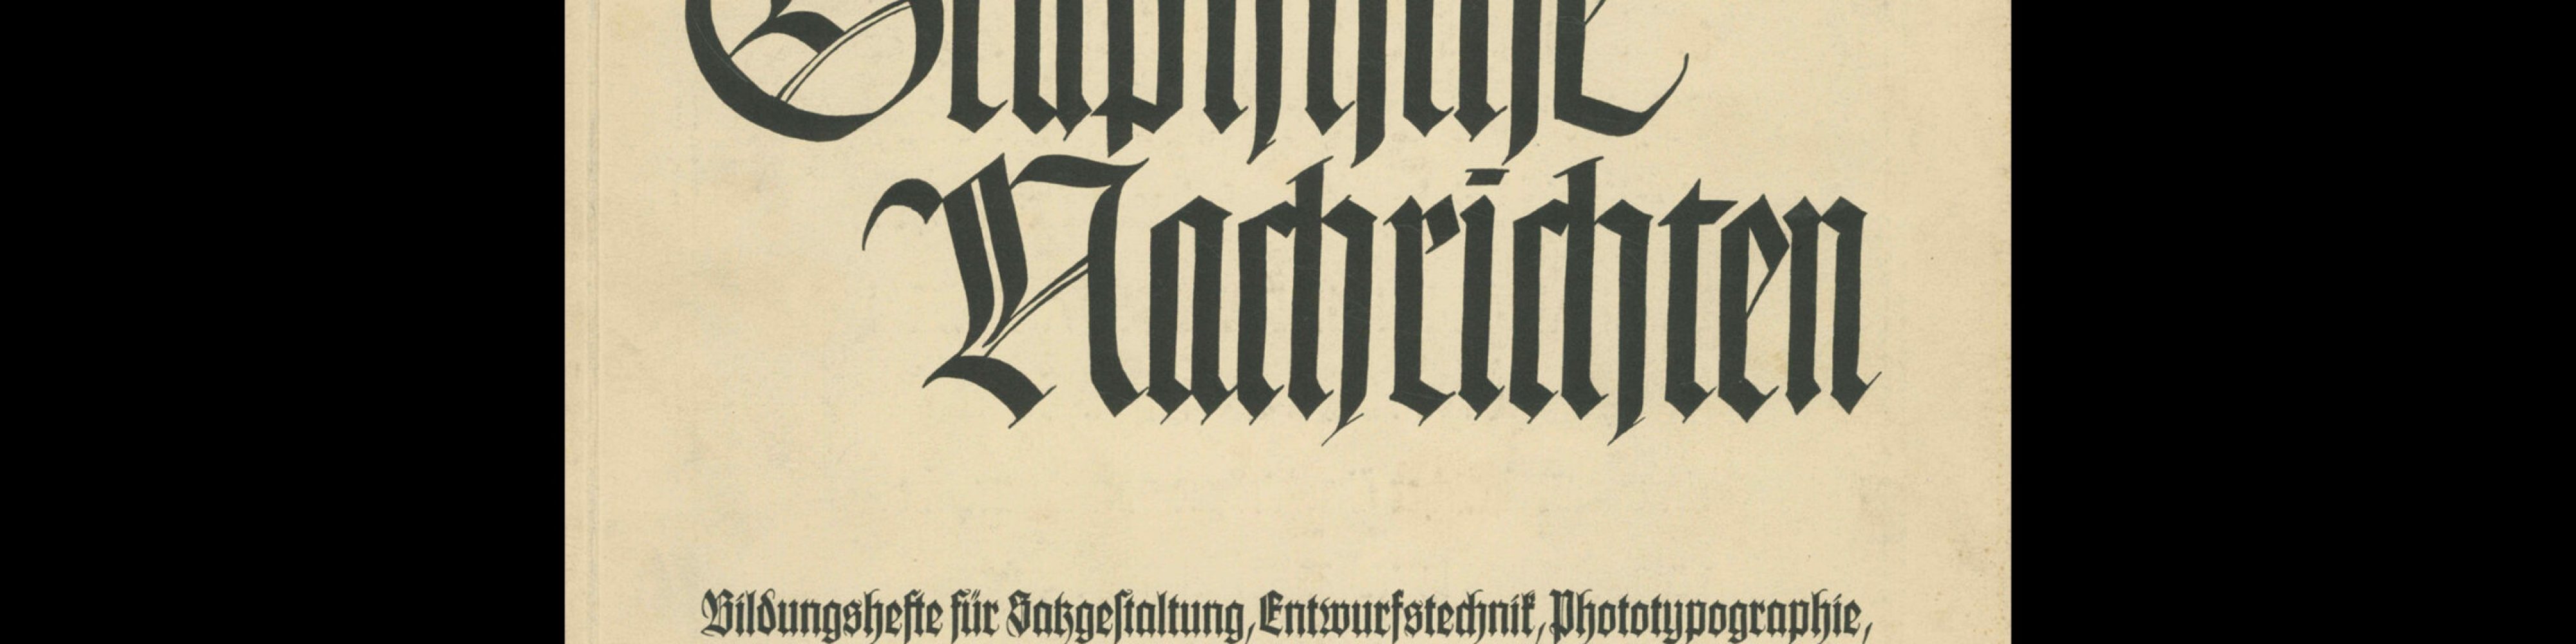 Graphische Nachrichten, Vol 15, March 1936